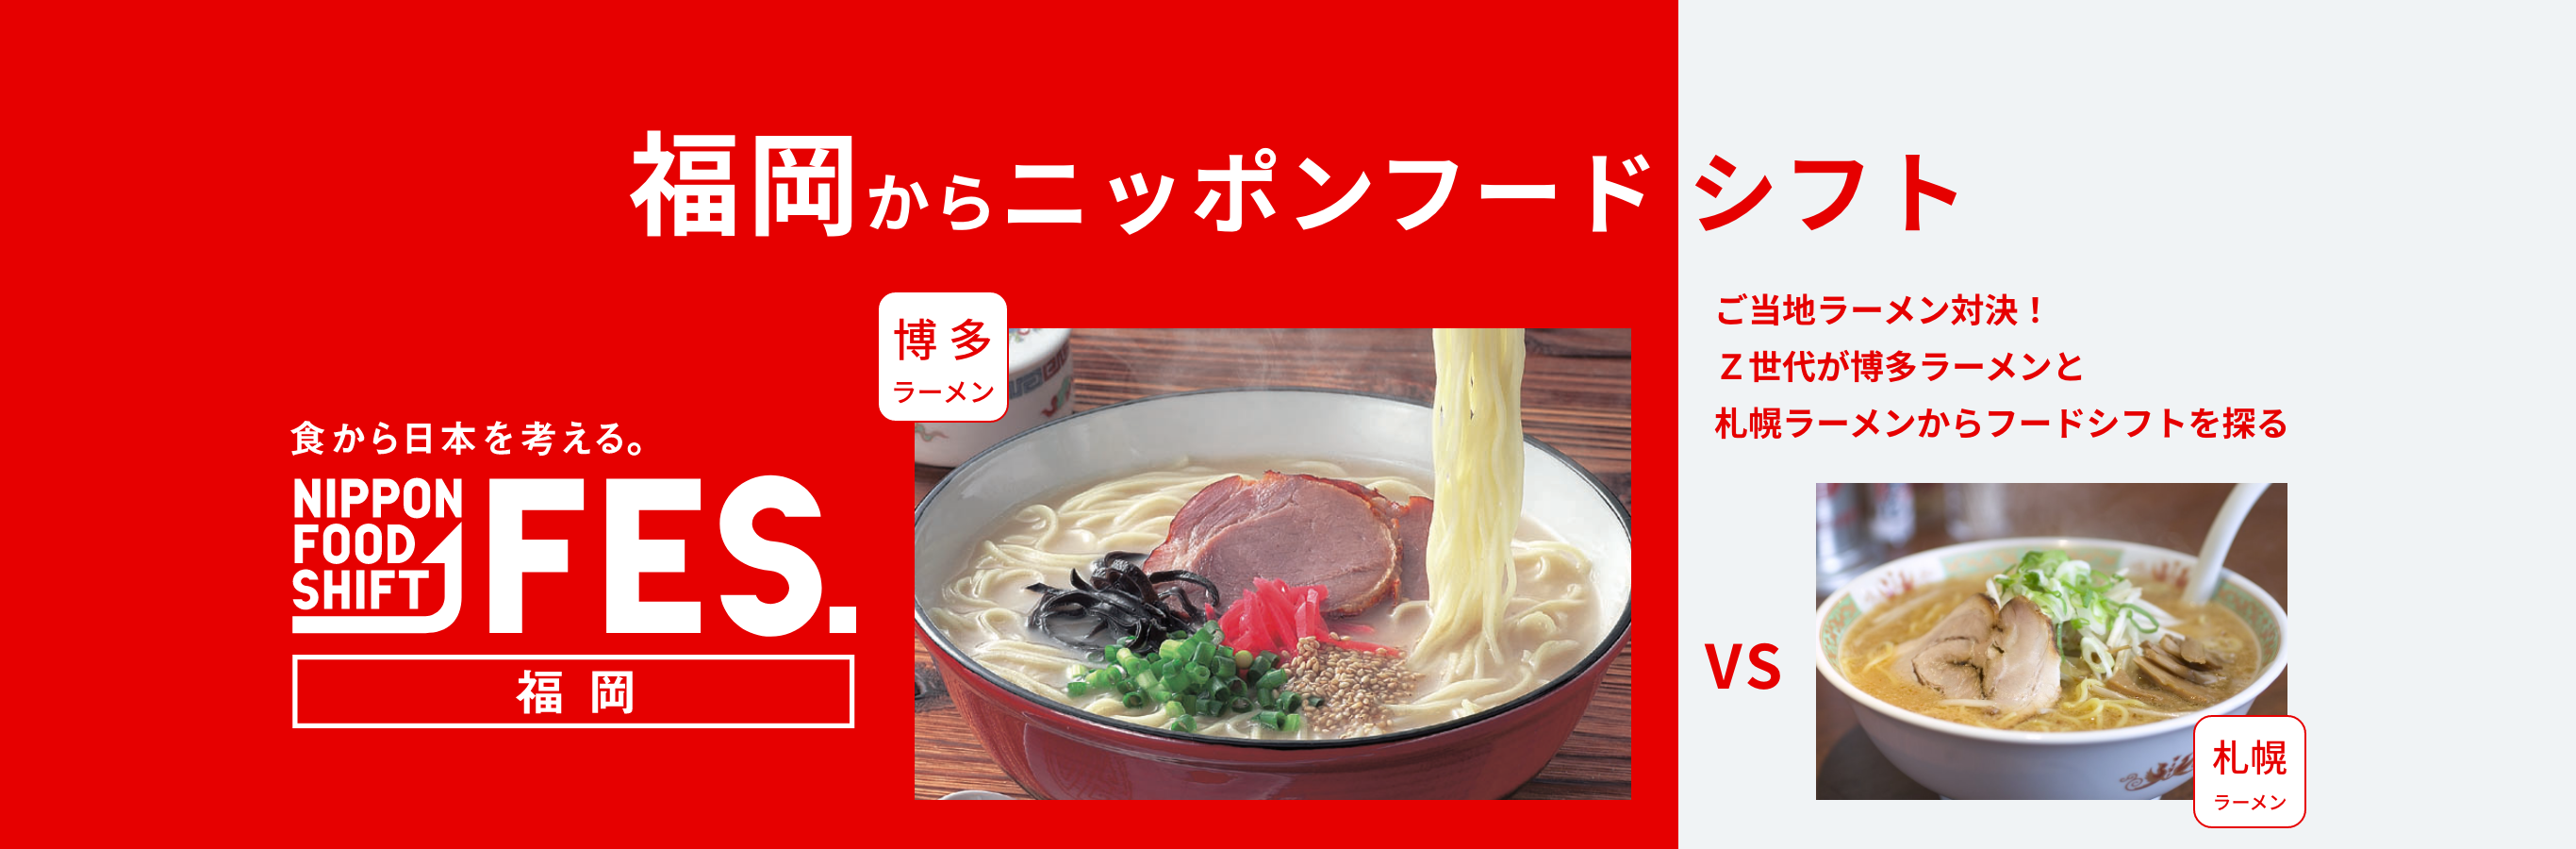 食から日本を考える。NIPPON FOOD SHIFT FES. 福岡からニッポンフードシフト